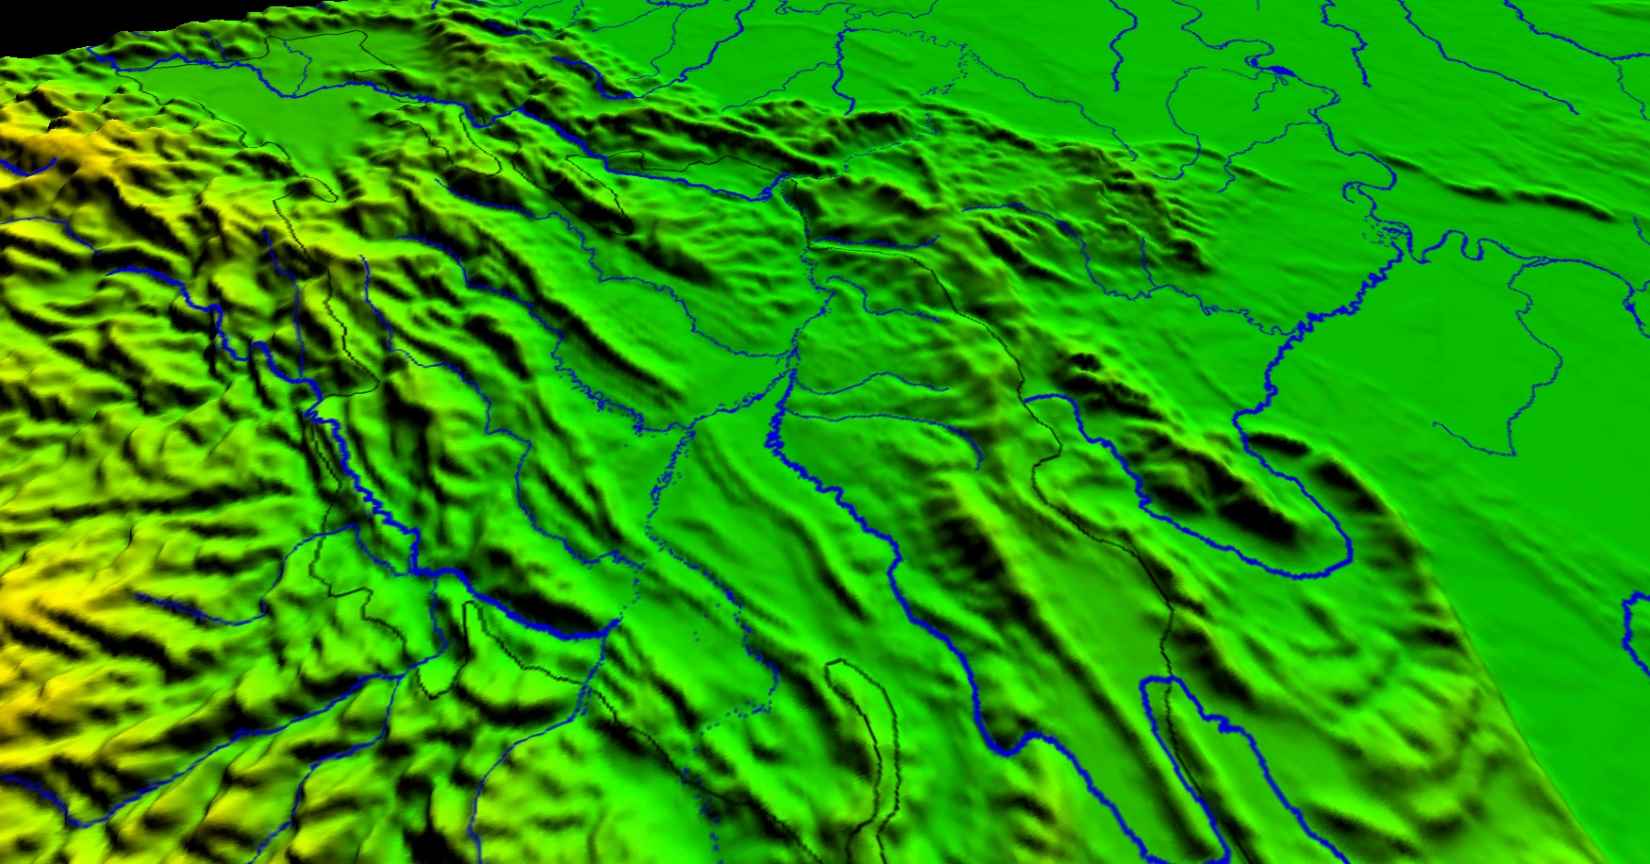 Cuenca Huallaga Norte: Evolución Tectónica, revisión estratigráfica y potencial hidrocarburífero